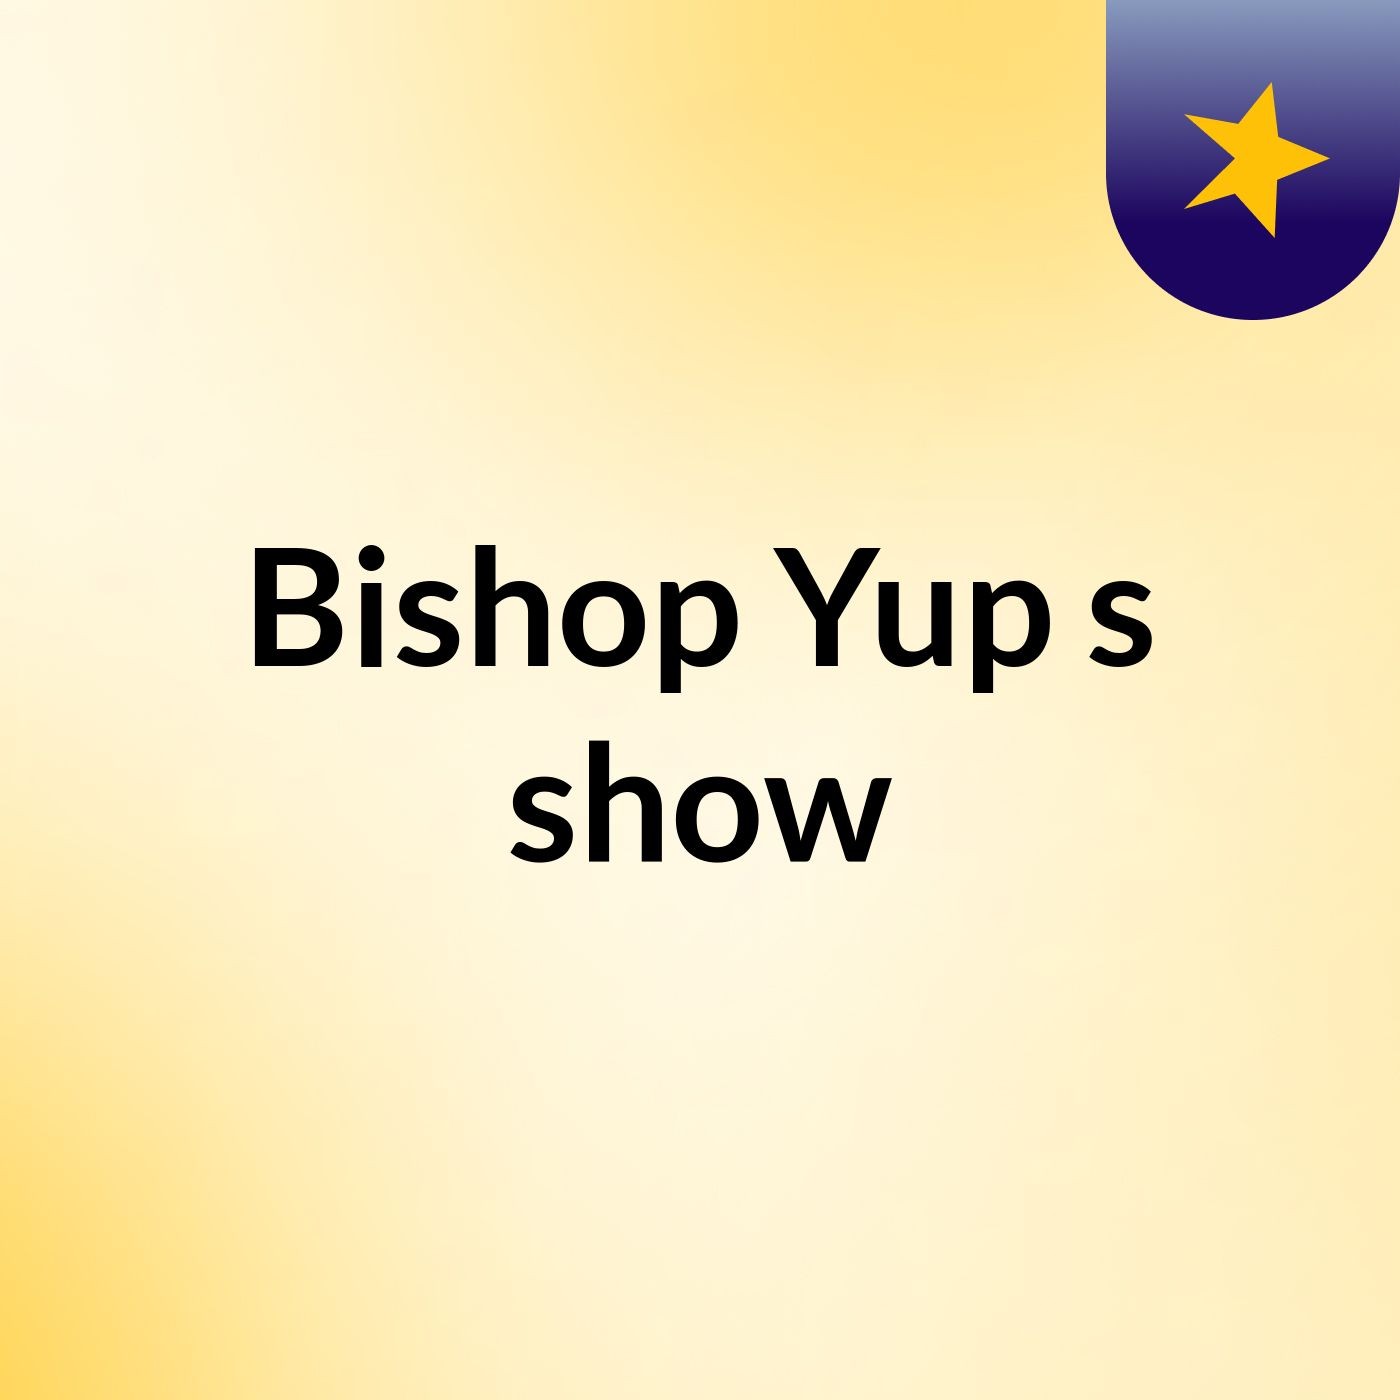 Episode 2 - Bishop Yup's show